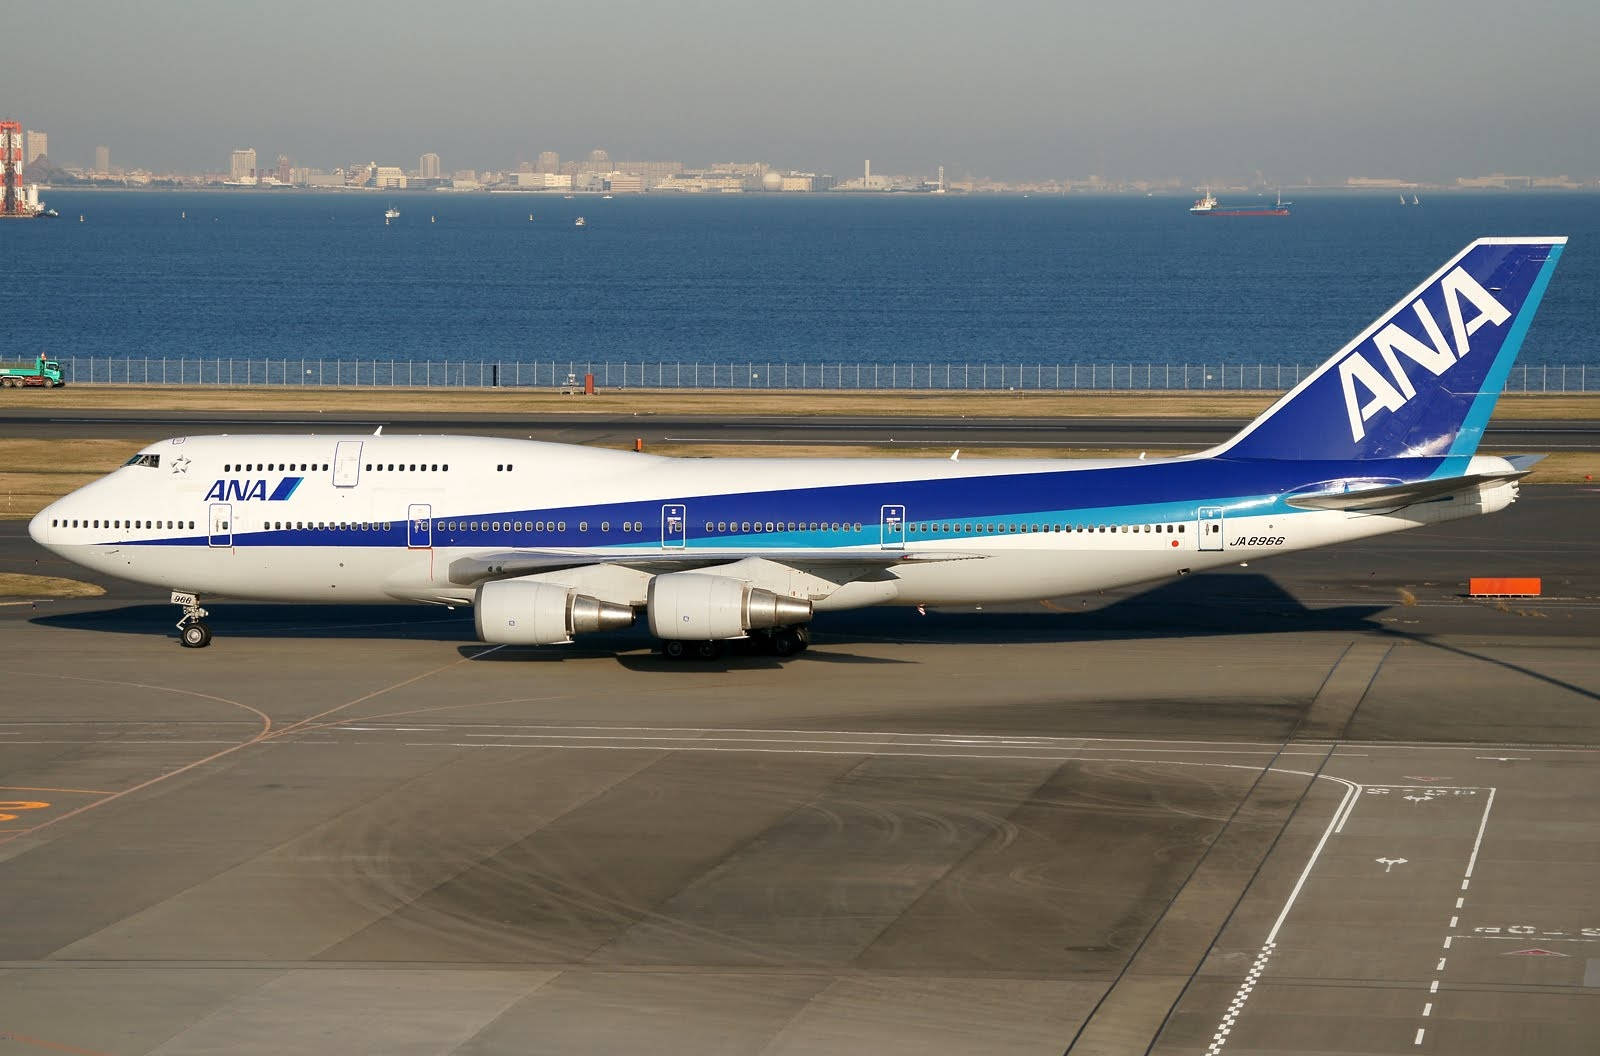 ANA Airplane Near A Blue Sea Wallpaper